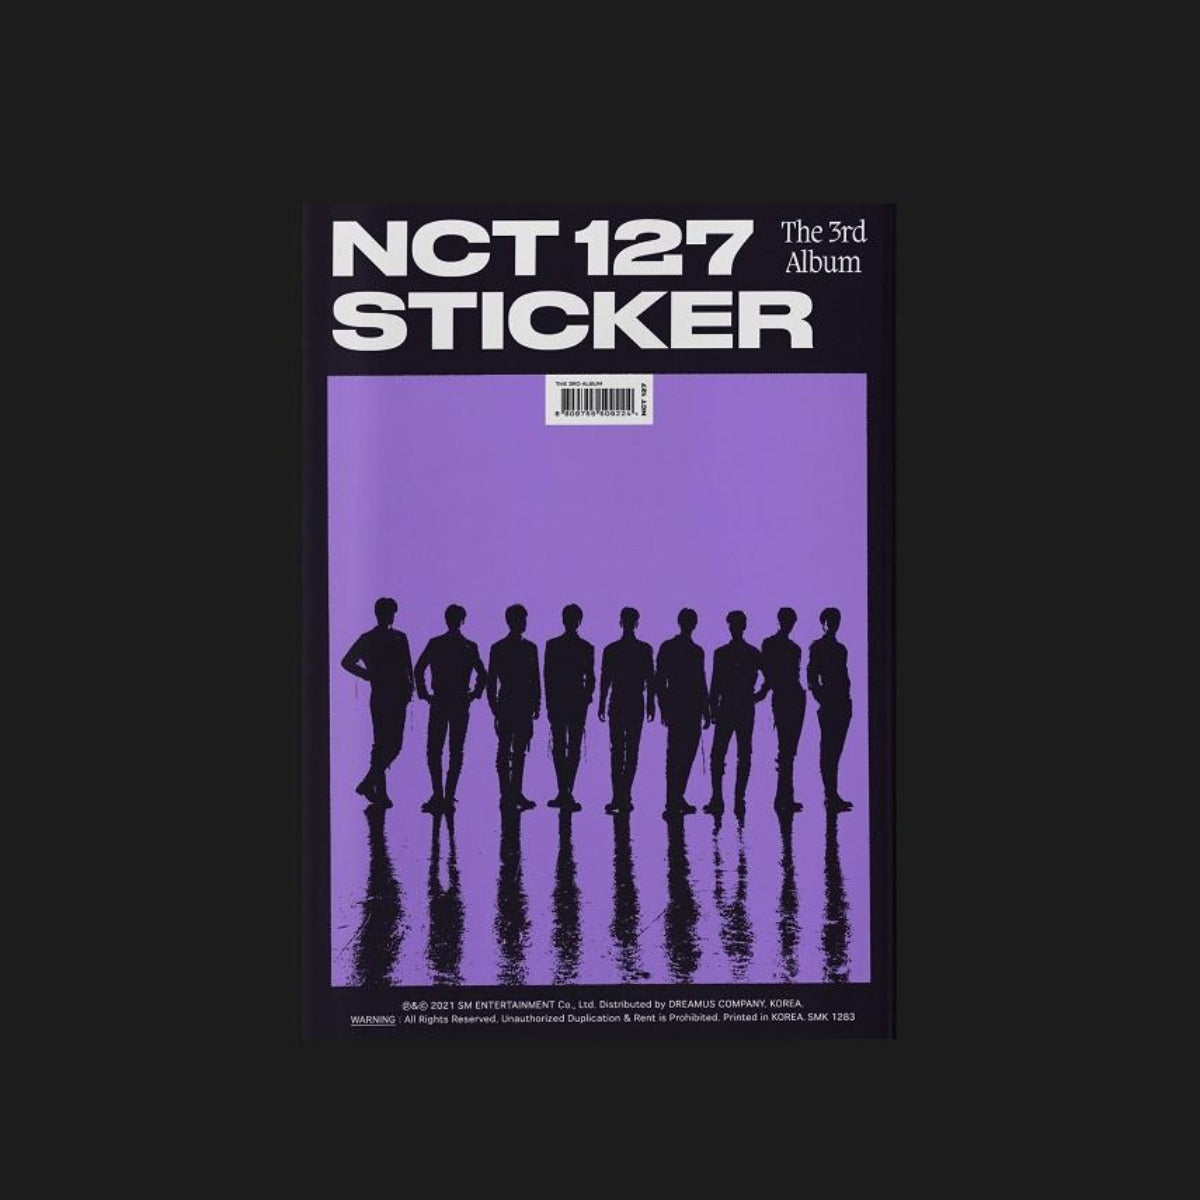 NCT 127 Vol. 3 - STICKER (Photobook Version) (STICKER Version)